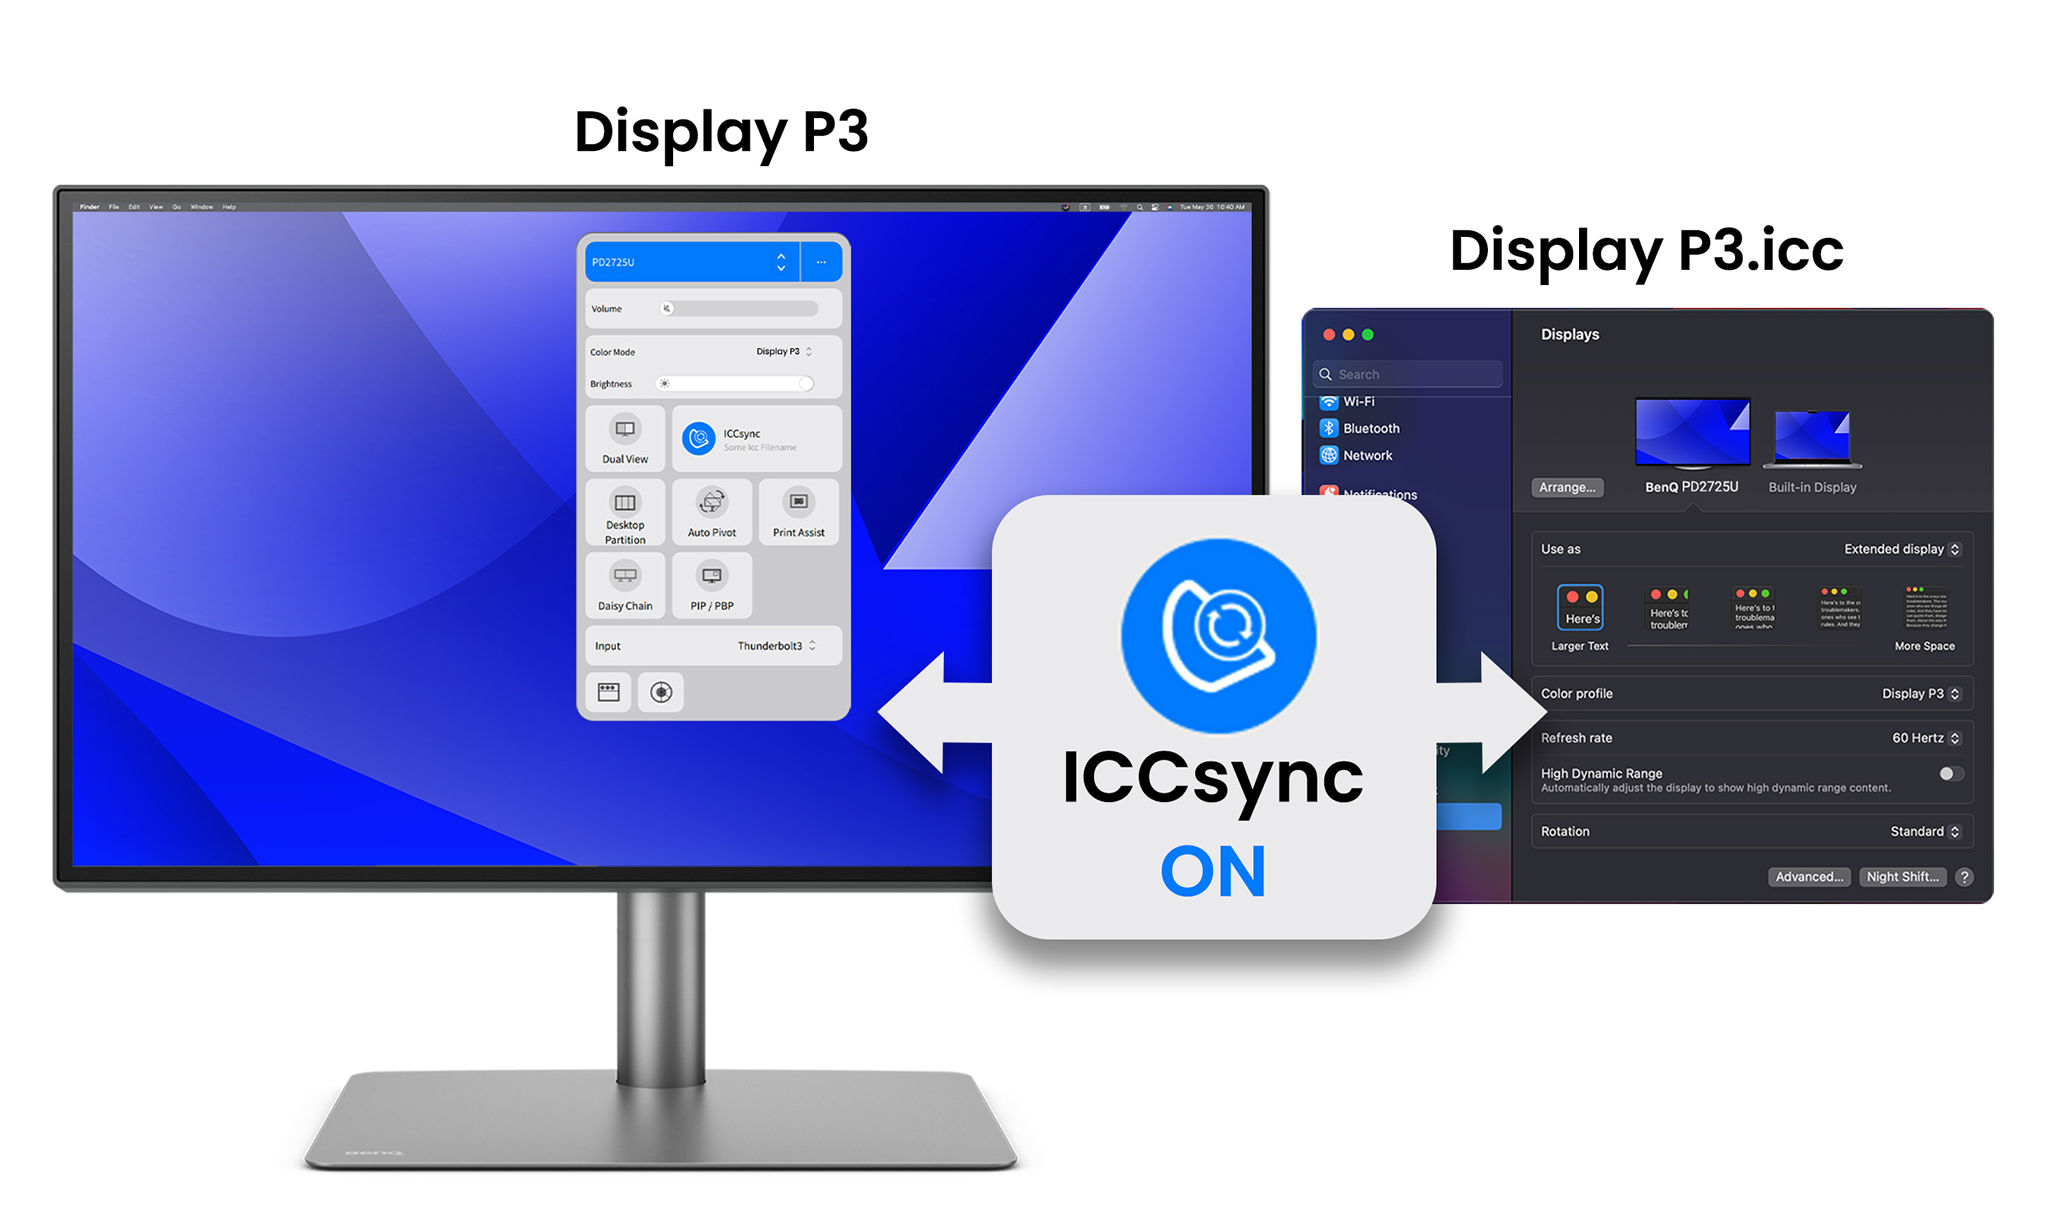 BenQ ICCsync matchar och synkroniserar automatiskt ICC-profiler på monitorn när du ändrar färglägen, och även mellan din Mac och BenQ-monitorn.